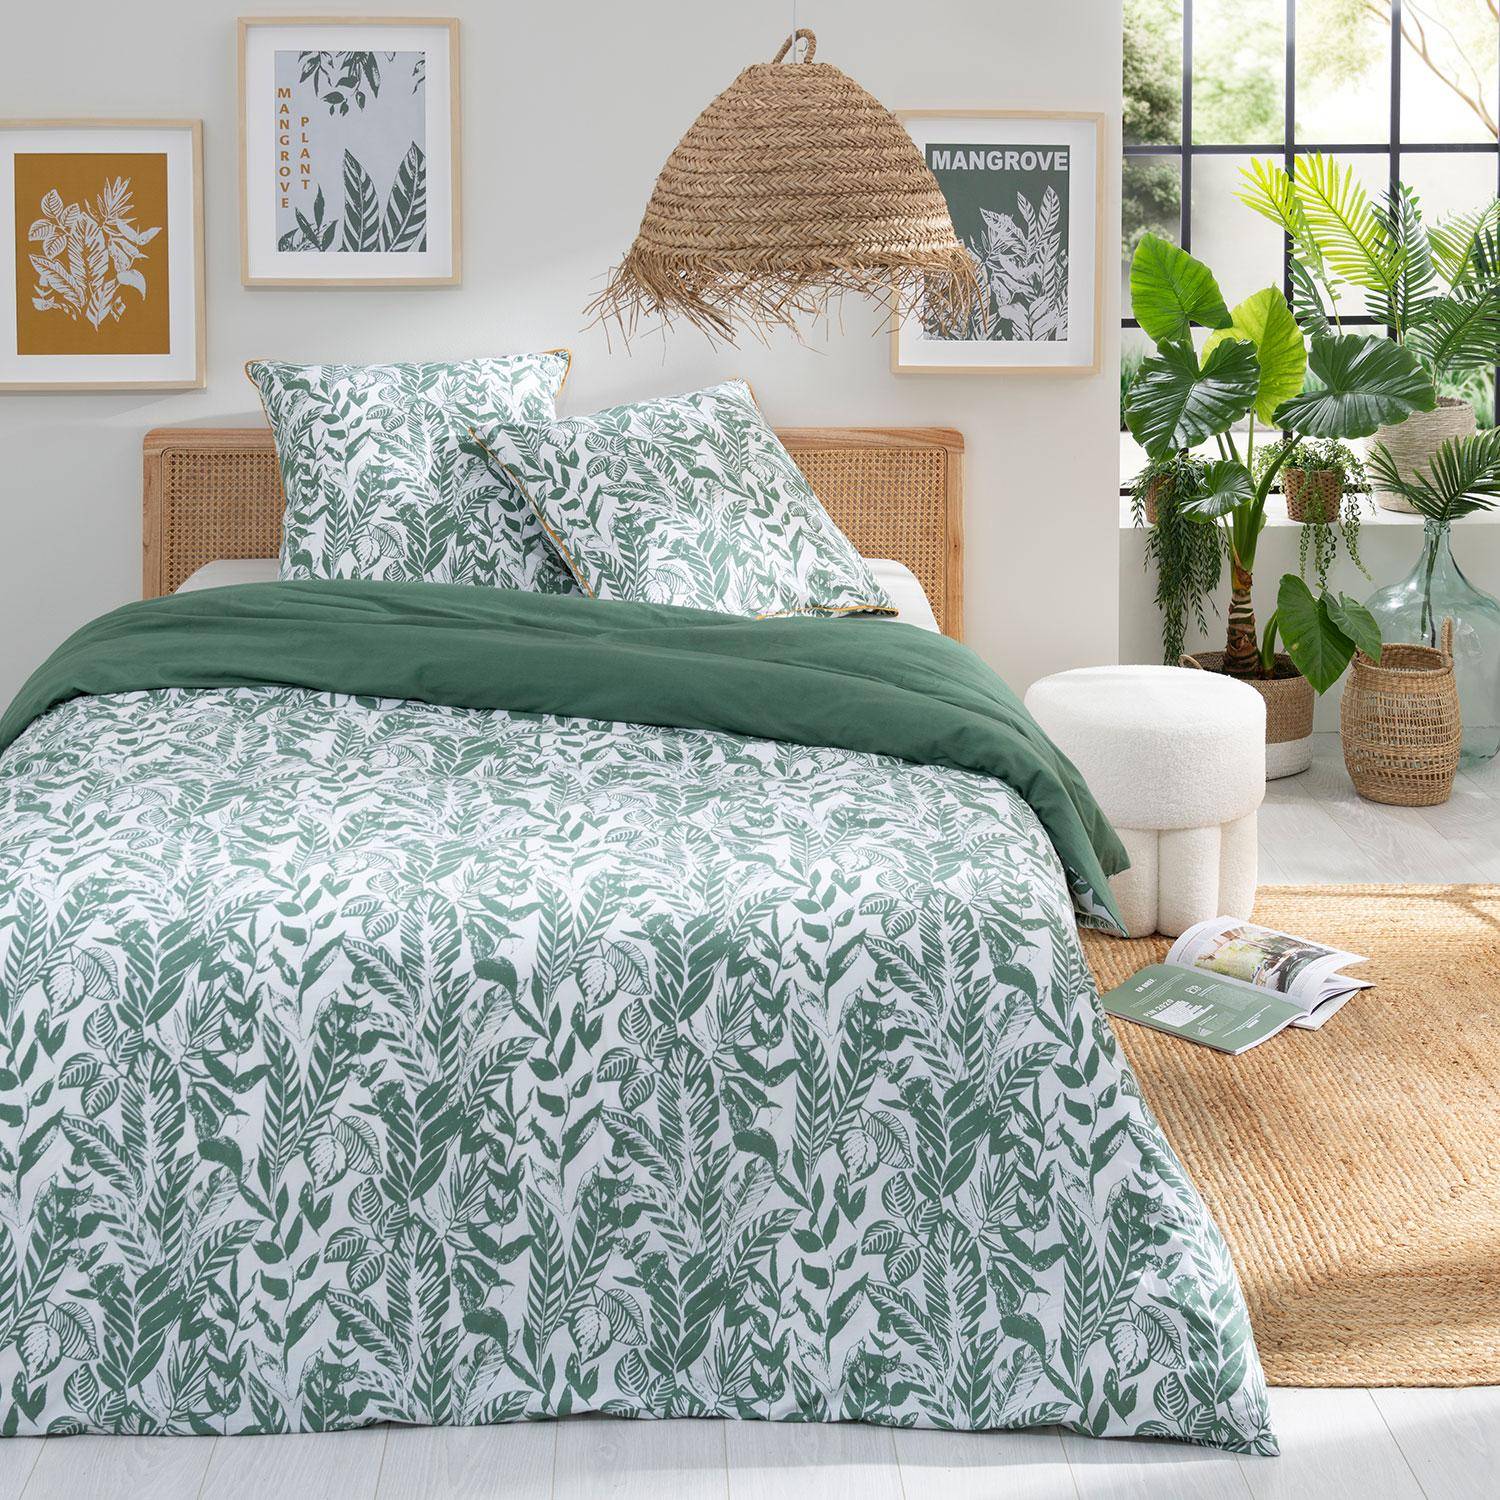 Parure de lit réversible 240x220cm imprimé feuillage vert et blanc en coton  Photo1